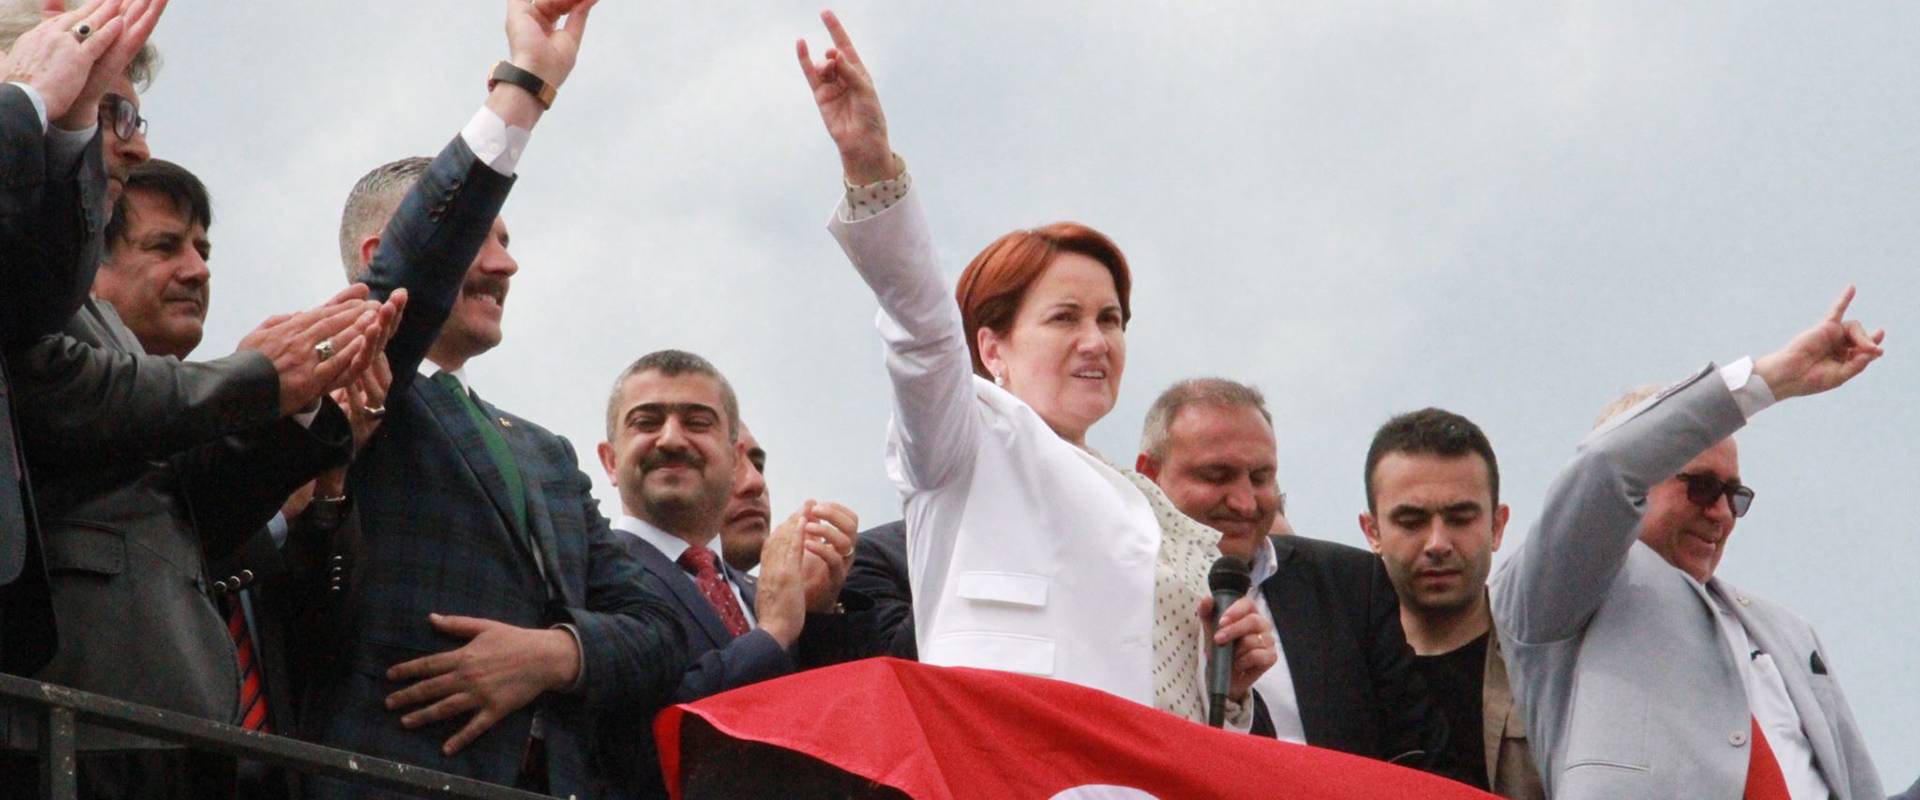 AKP-Krise und neue Parteien in der Türkei